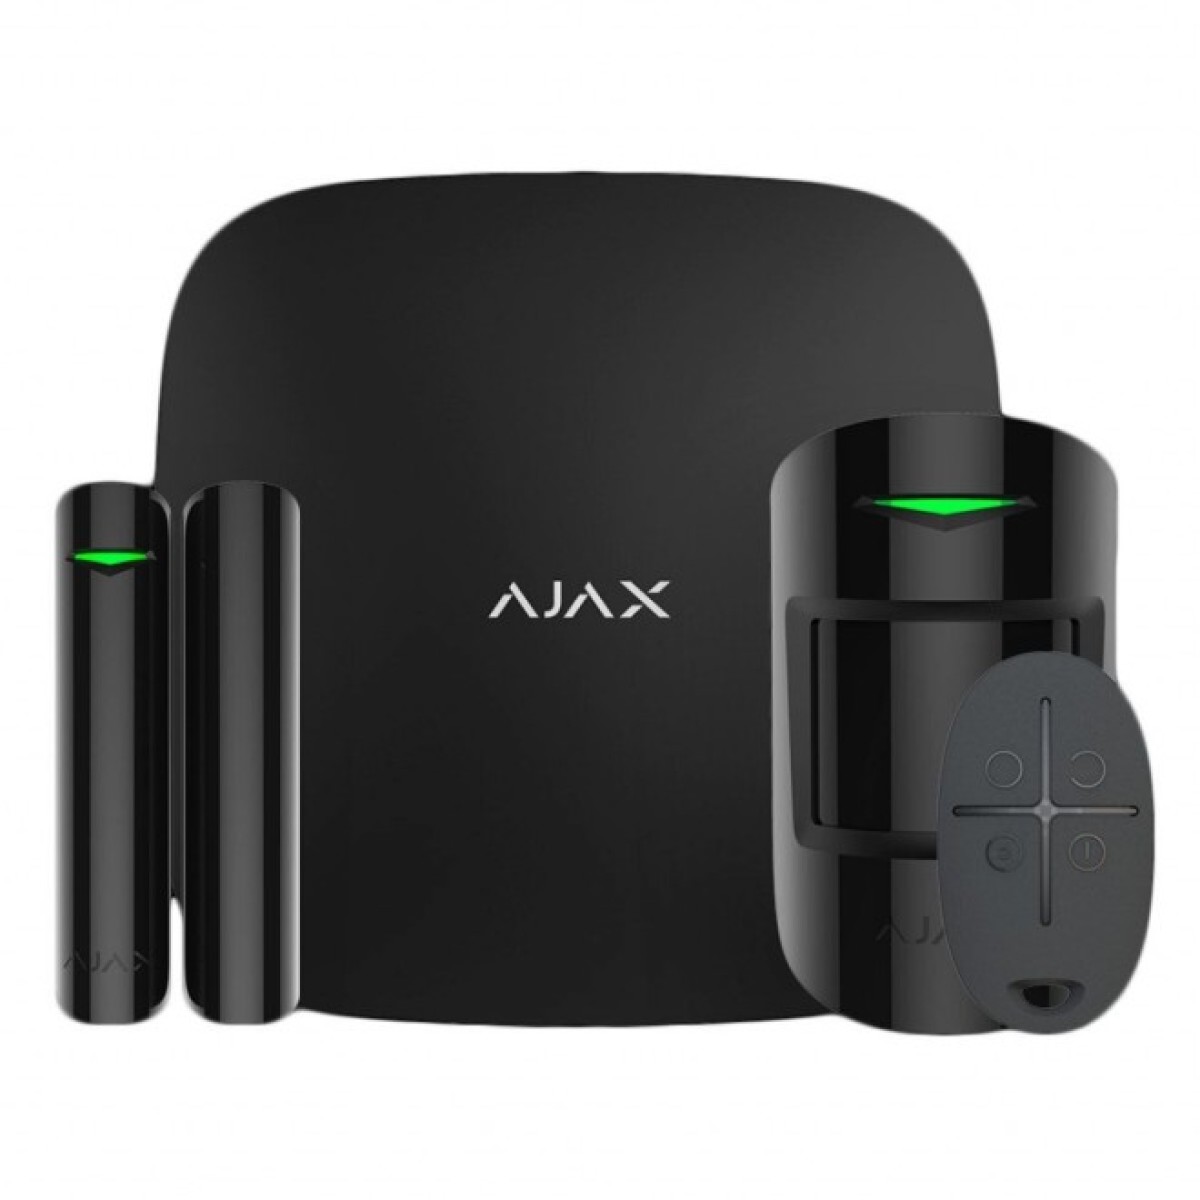 Комплект охранной сигнализации Ajax StarterKit 2 /Black 256_256.jpg